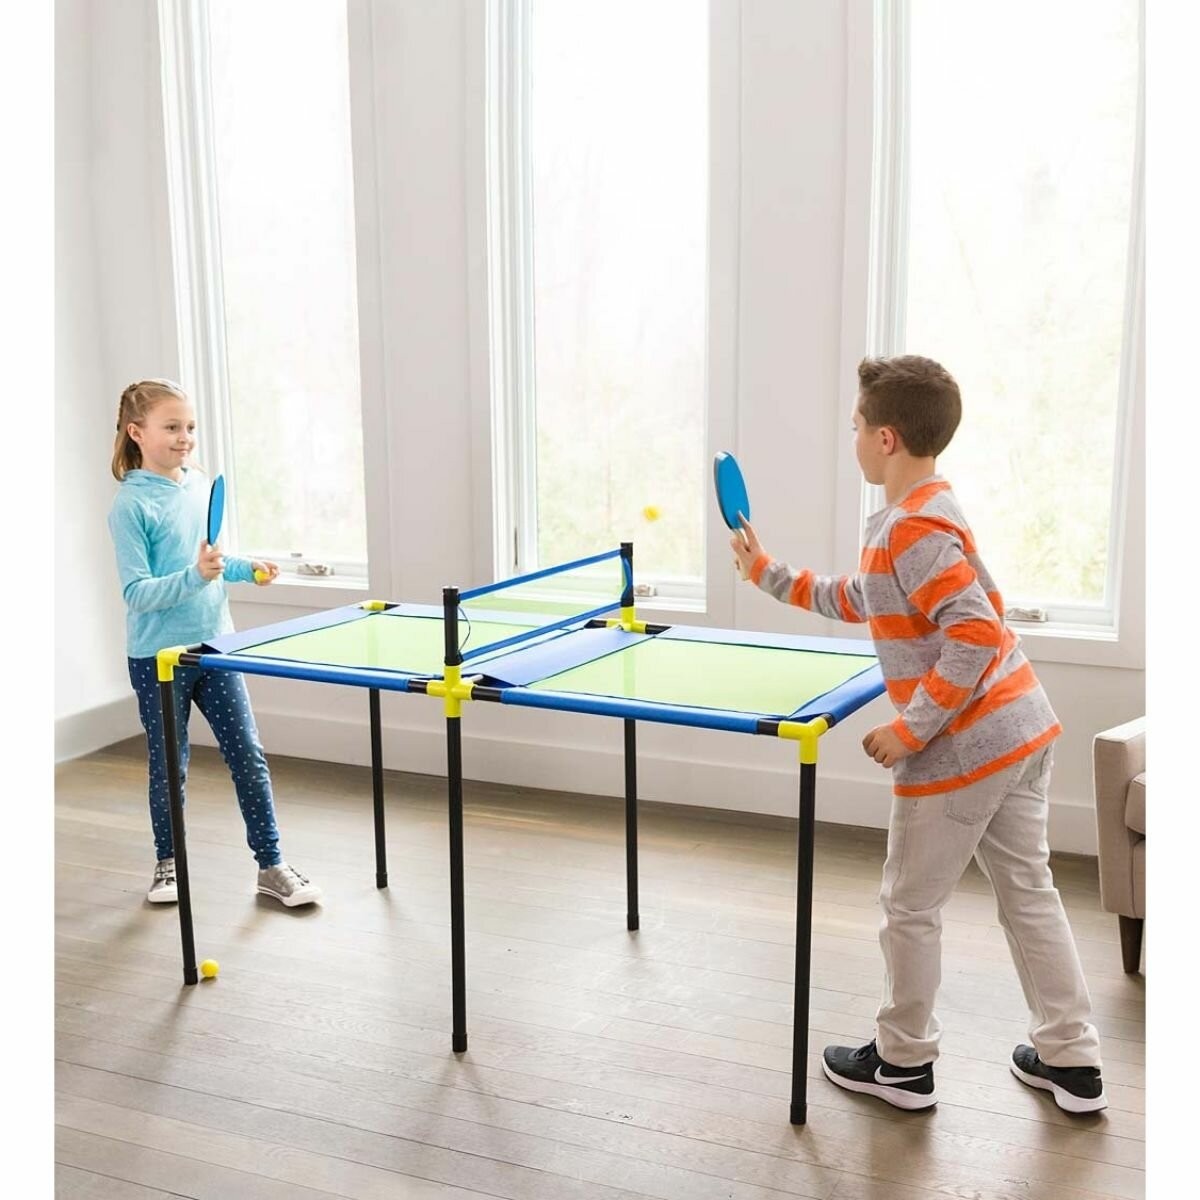 Kan niet lezen of schrijven Verpersoonlijking verdediging Best Indoor Table Tennis Tables - Ideas on Foter